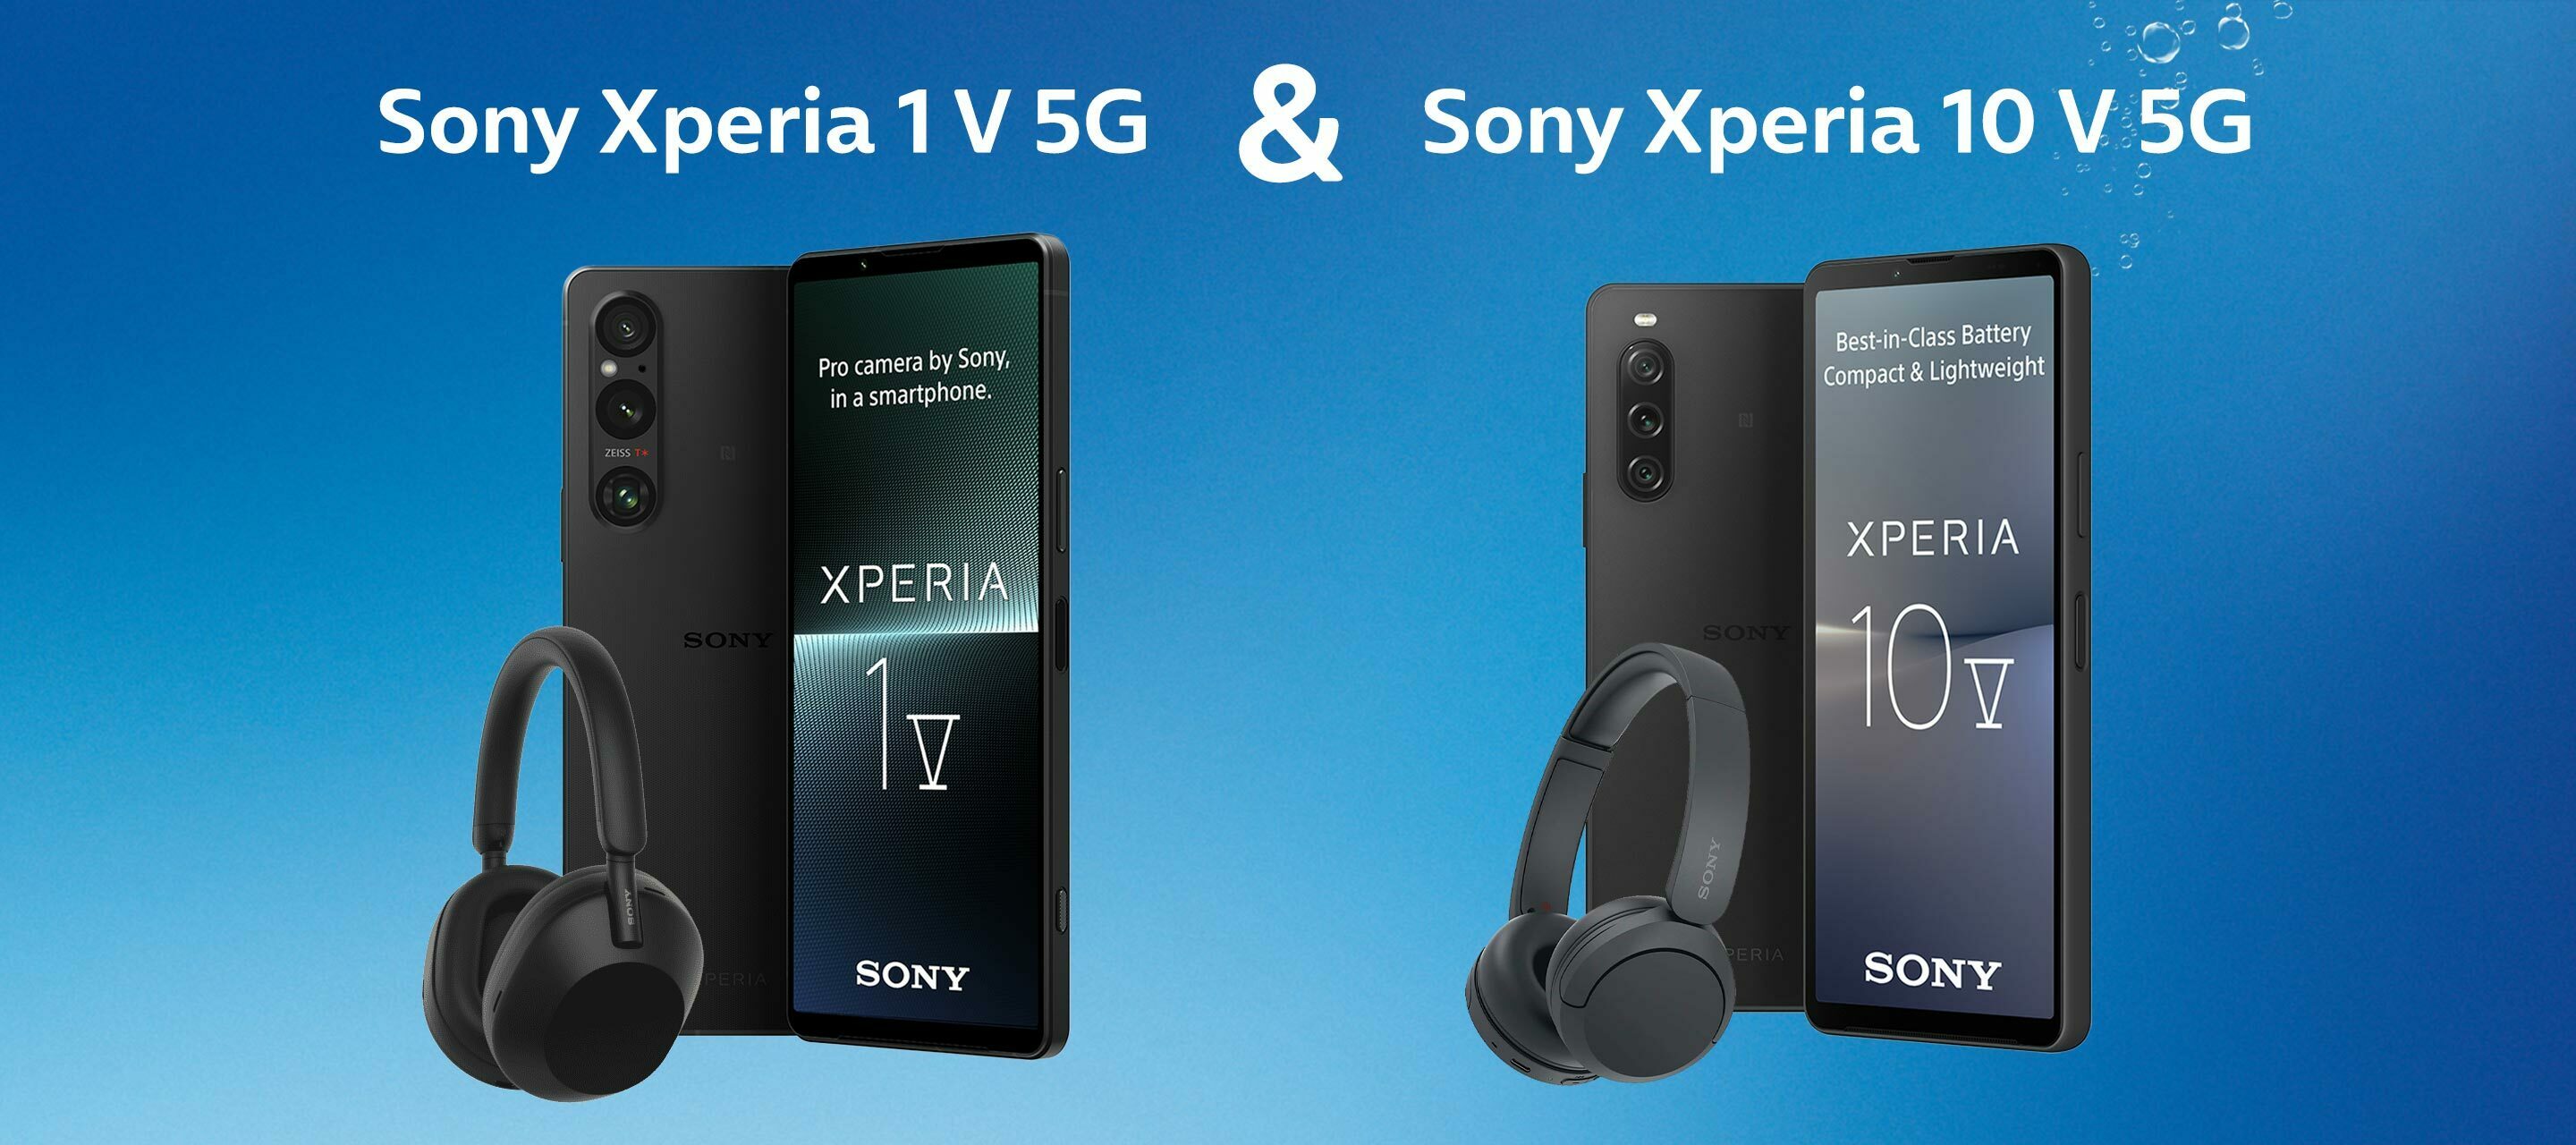 Das Sony Xperia 10 V 5G & Sony Xperia 1 V 5G SA bei O₂